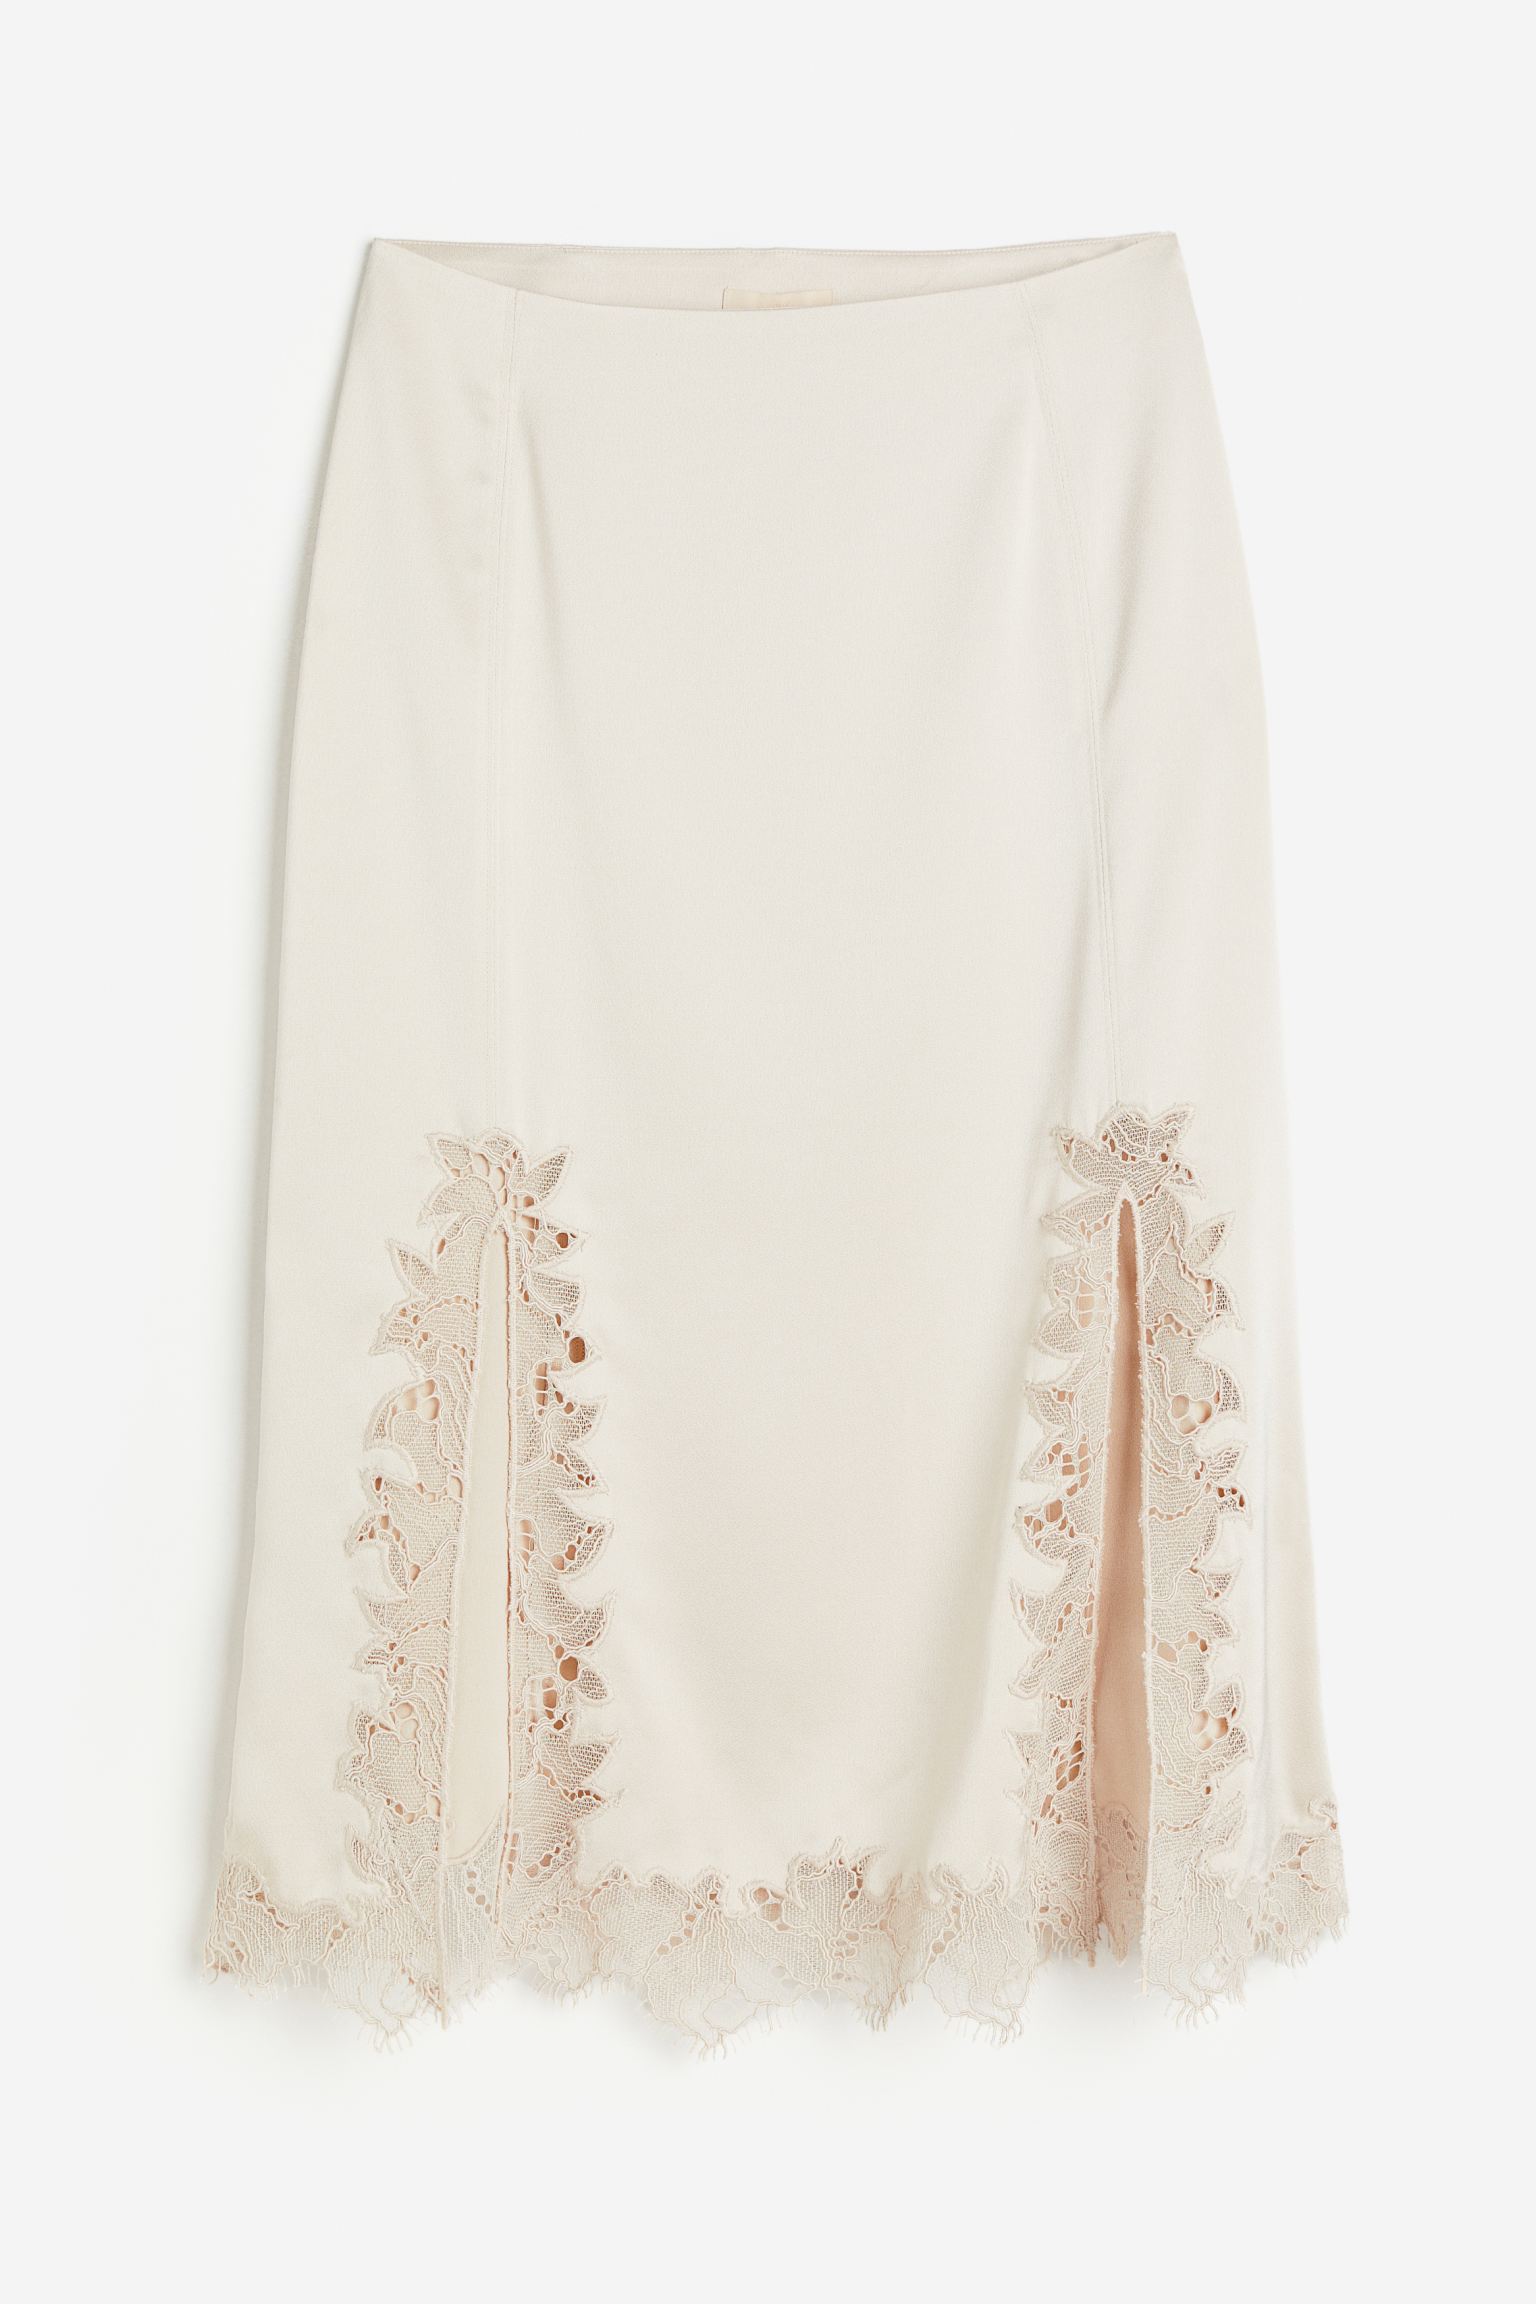 Юбка H&M Lace-trimmed Satin, светло-бежевый облегающая юбка прозрачная кружевная уличная одежда облегающая юбка на молнии для офиса